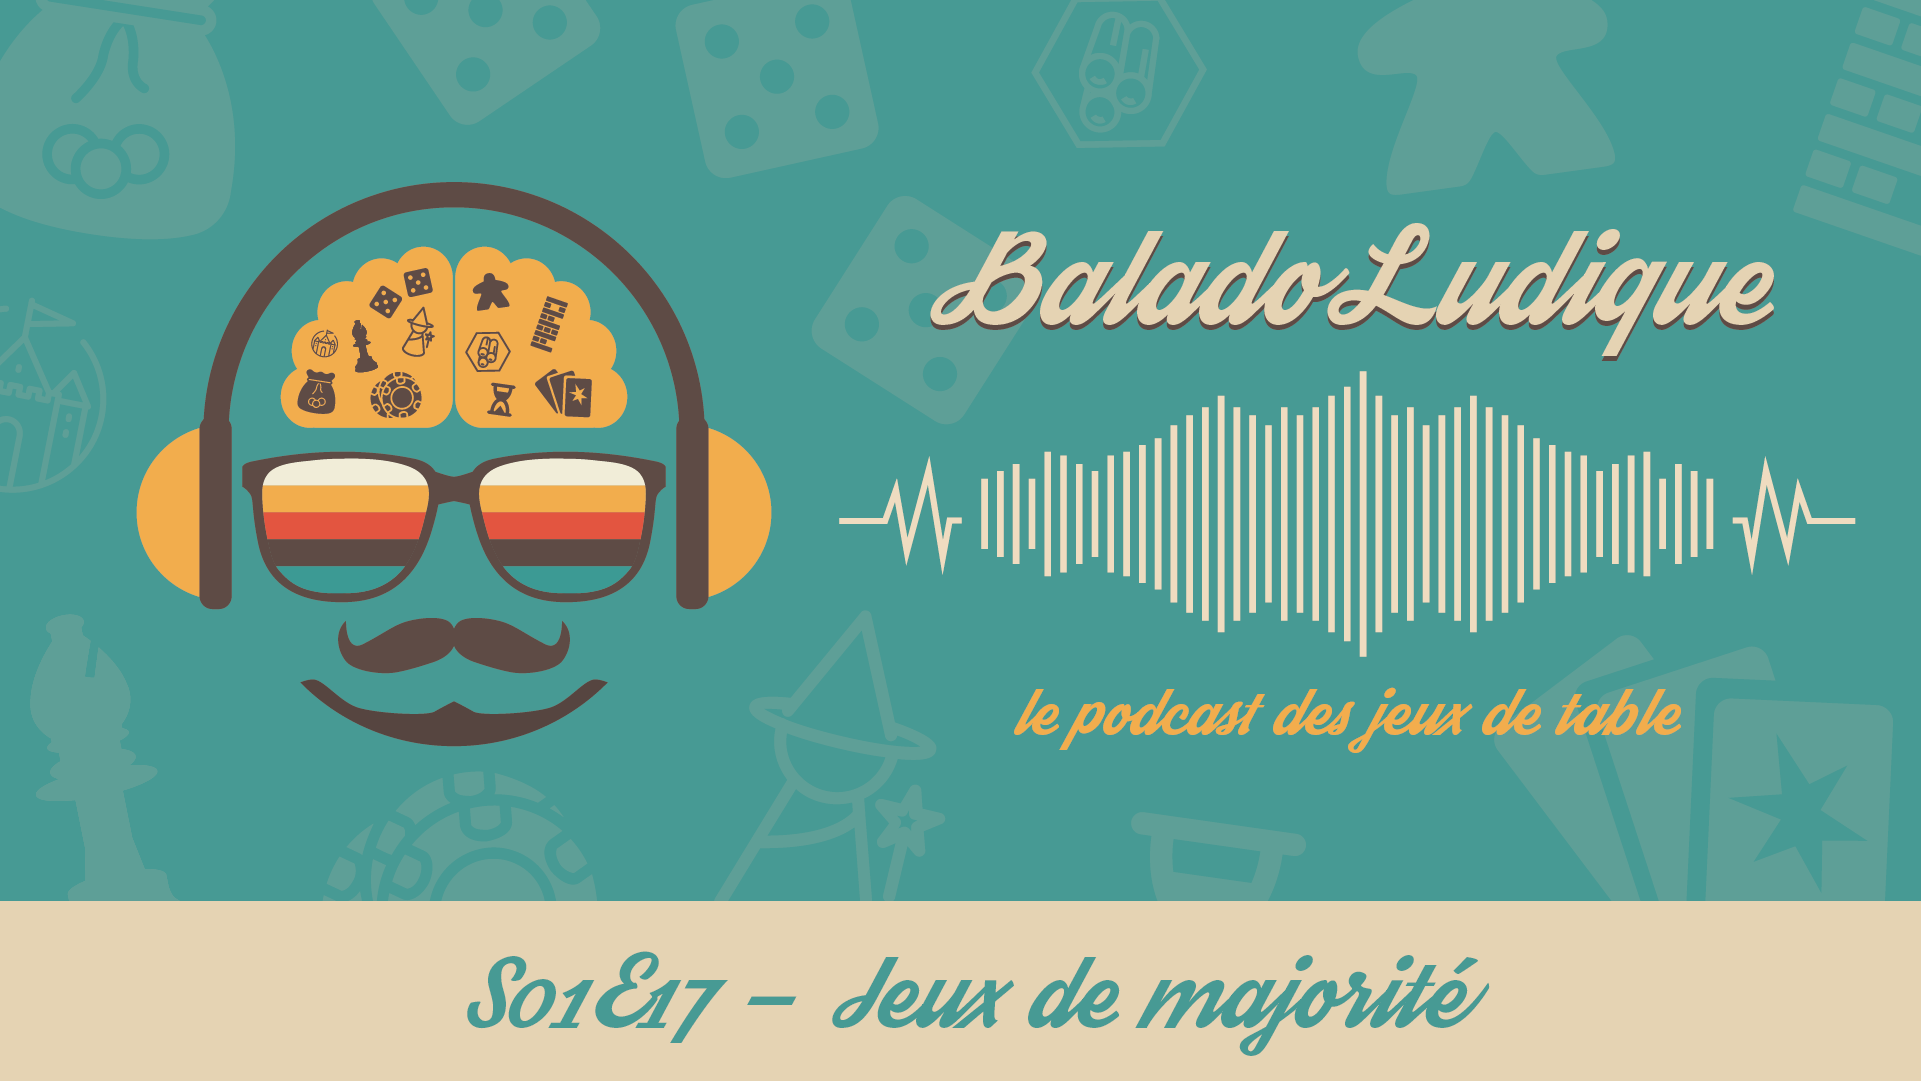 Jeux de Majorité - BaladoLudique - s01e17